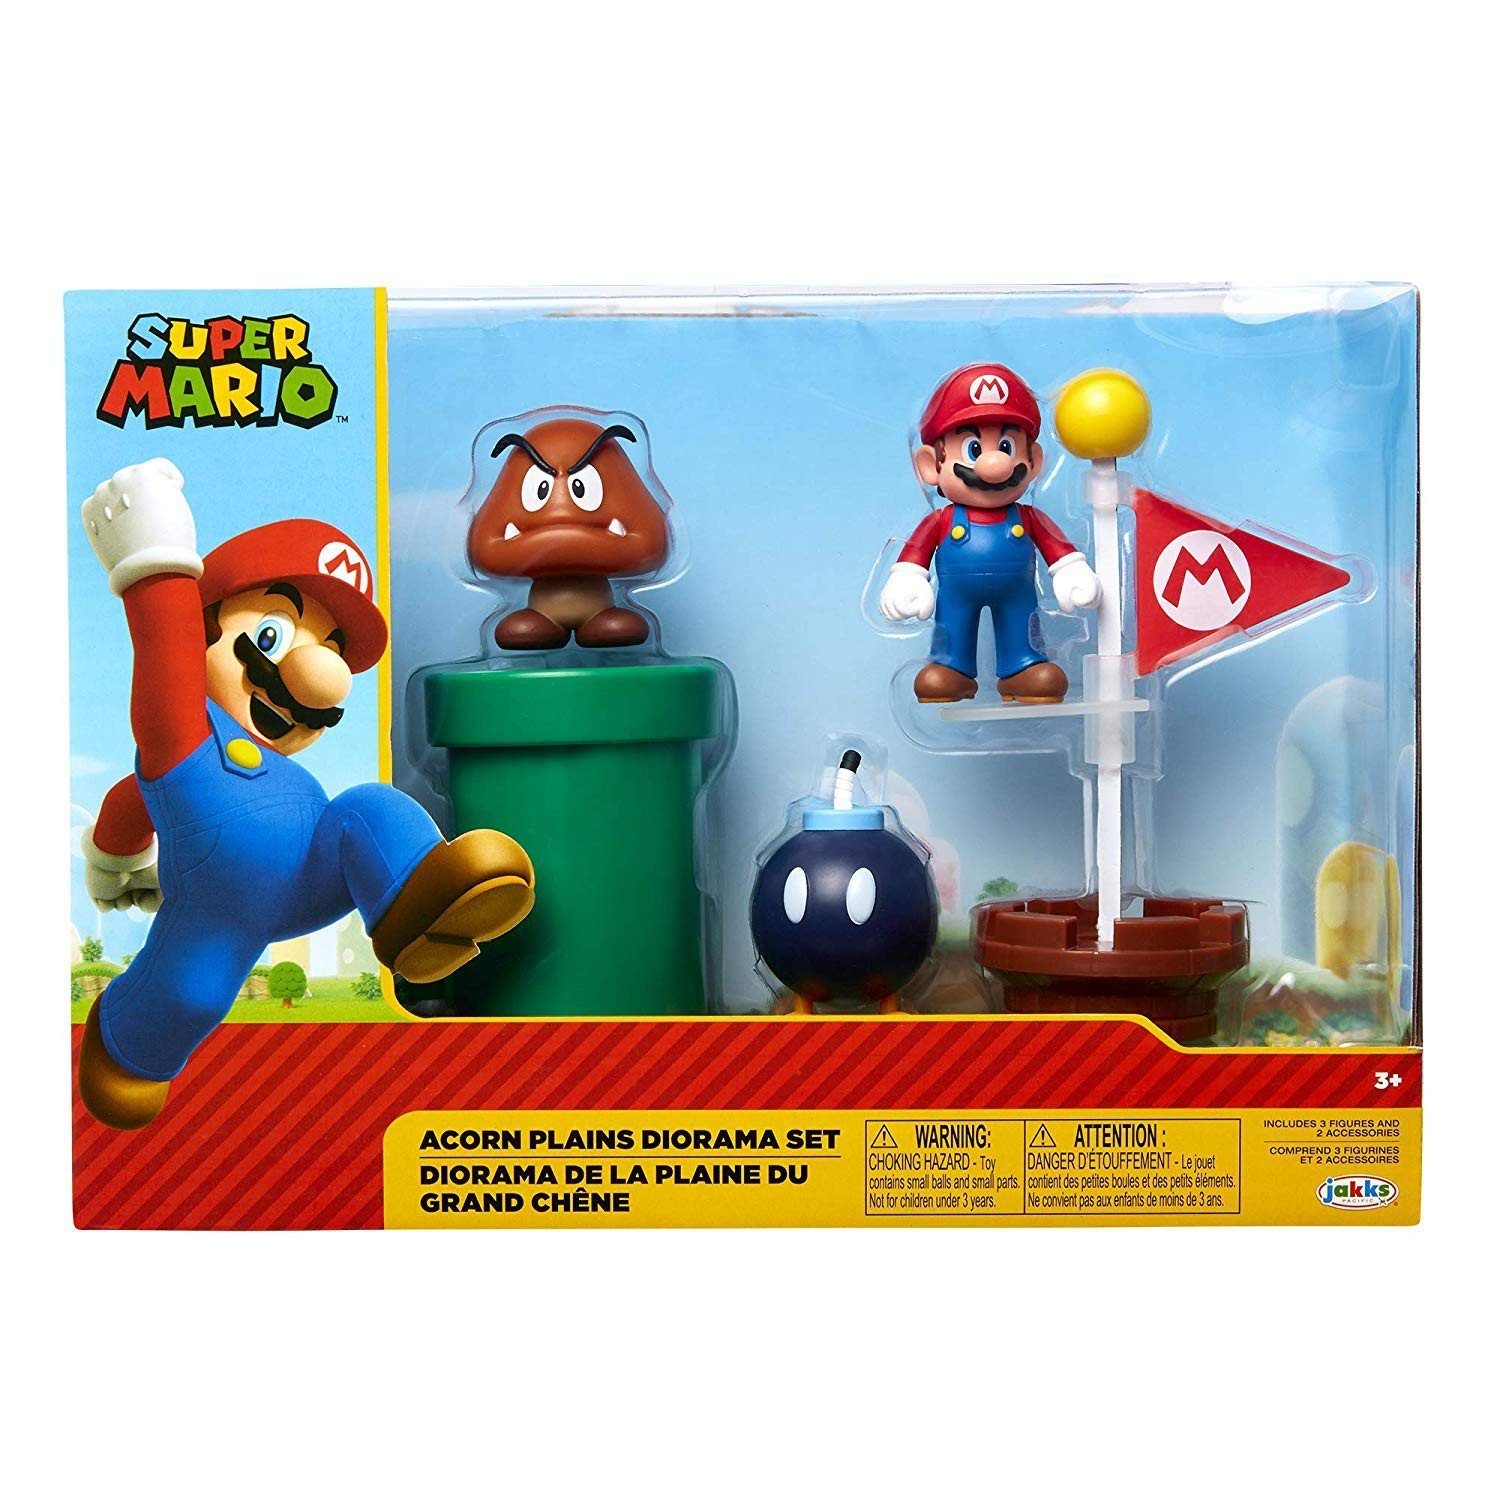 Køb Super Mario - Acorn Plains Diorama Set → Gratis og altid billige priser ←